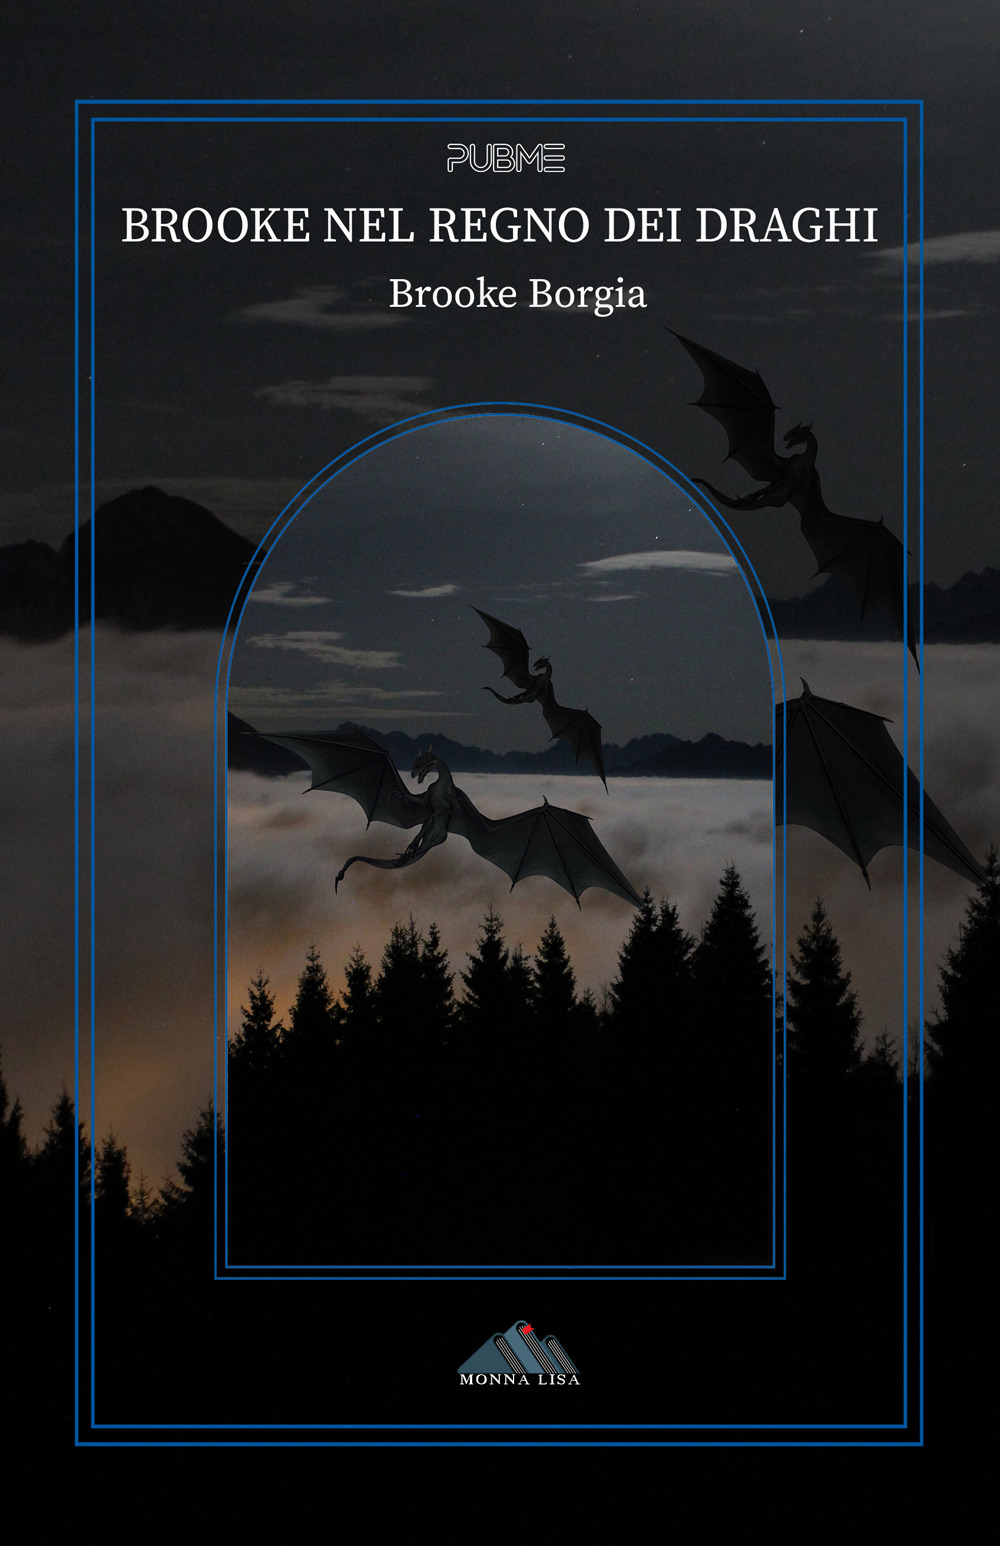 Brooke nel regno dei draghi